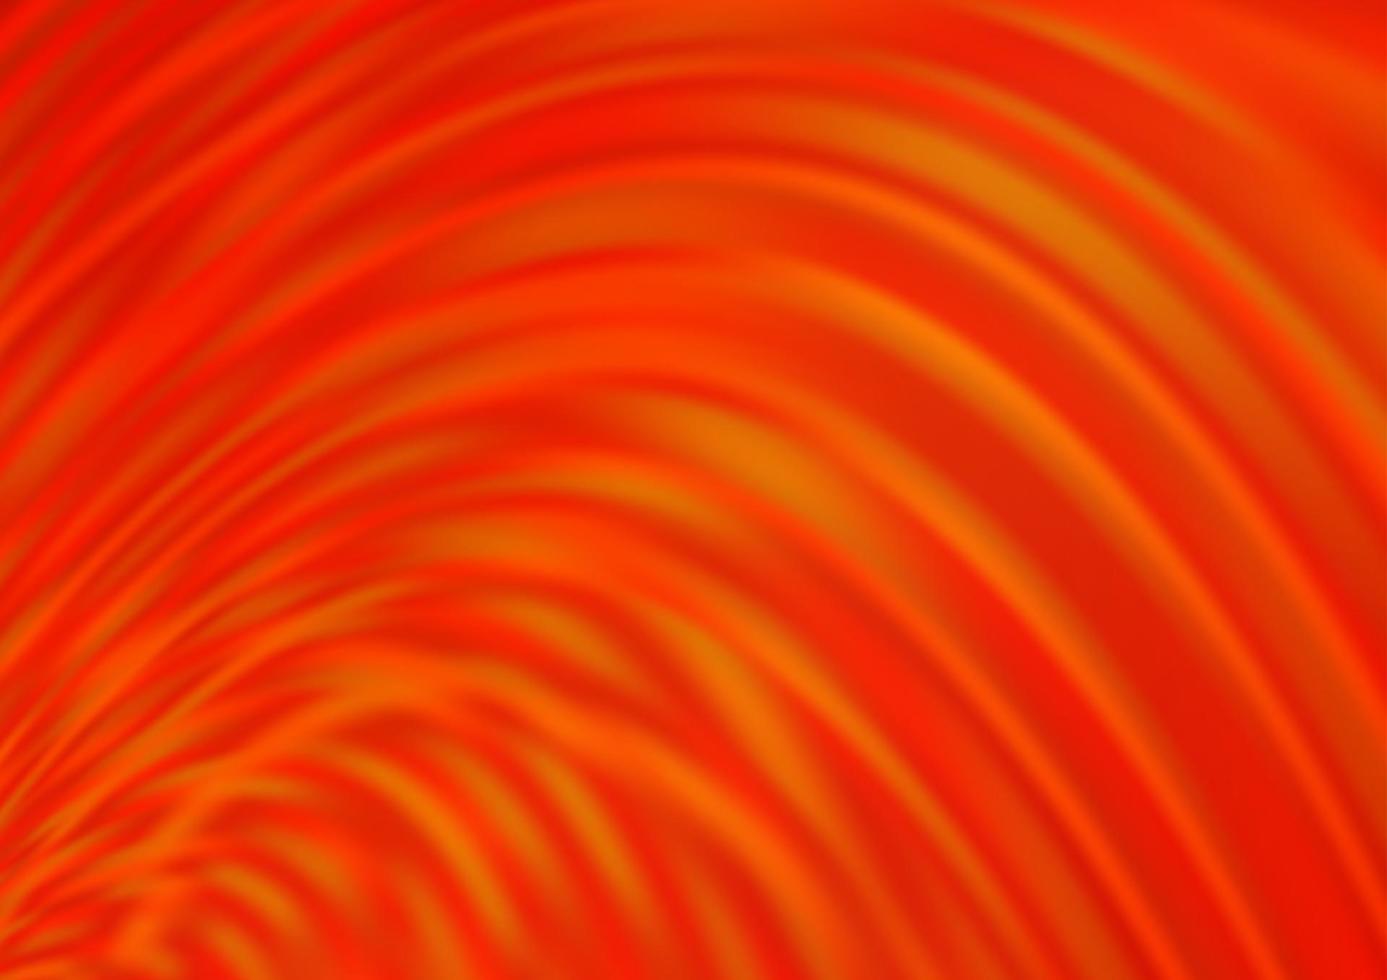 Light Orange vector modern elegant background.